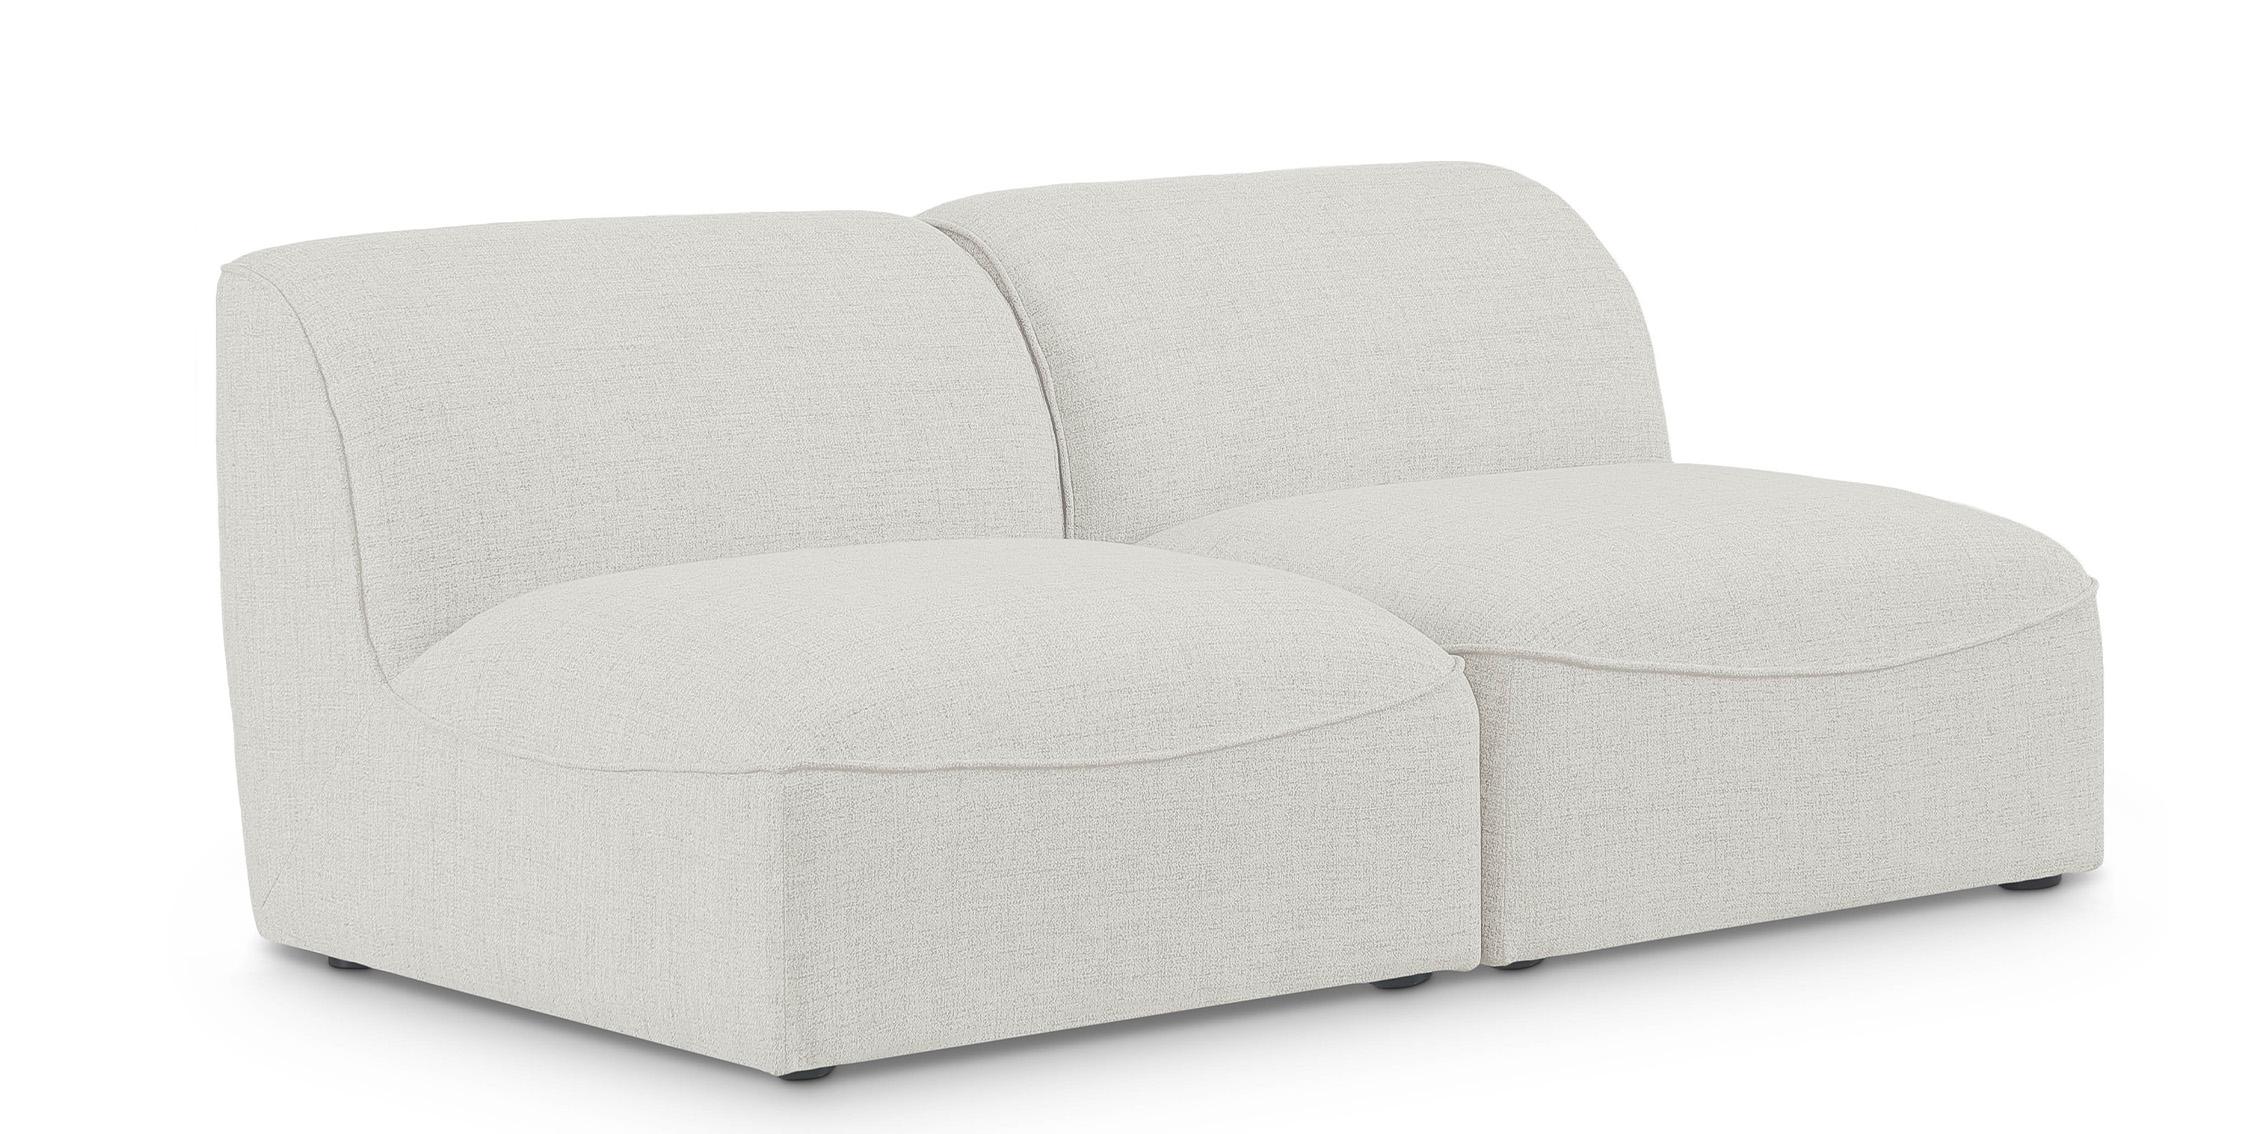 Contemporary, Modern Modular Sofa MIRAMAR 683Cream-S66 683Cream-S66 in Cream Linen